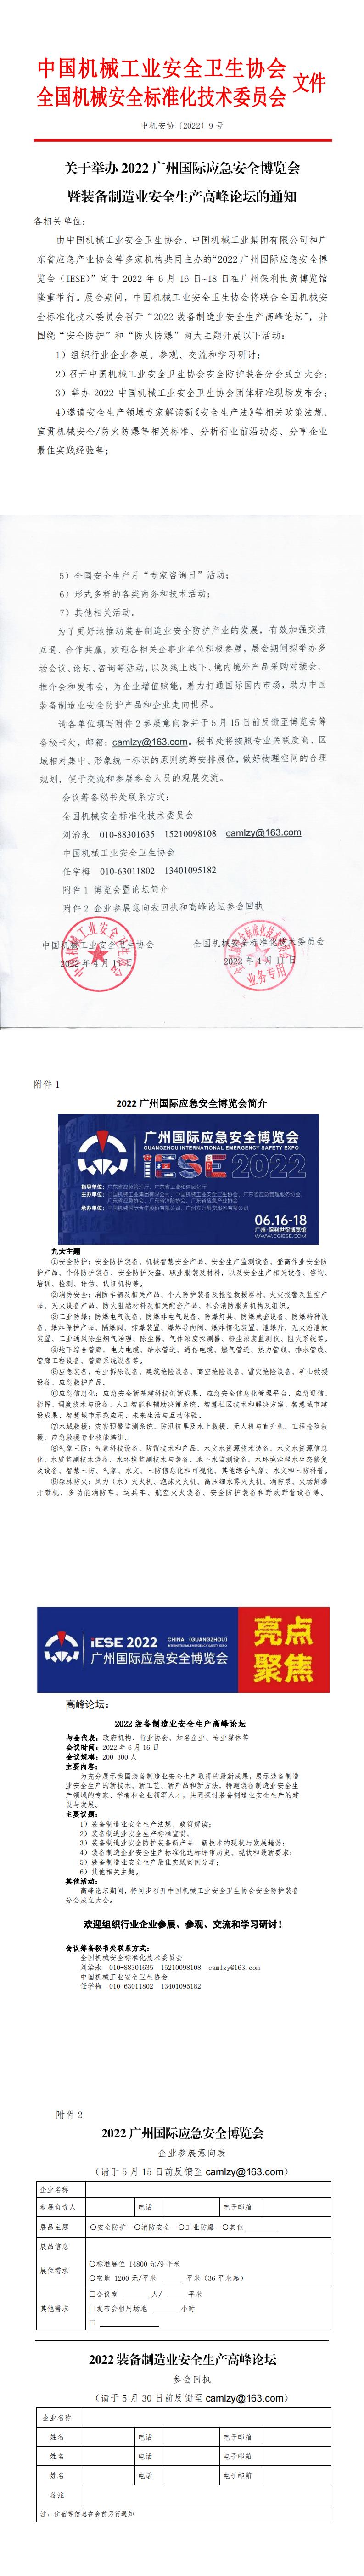 2022广州国际应急安全博览会暨装备制造业安全生产高峰论坛的通知_0.jpg